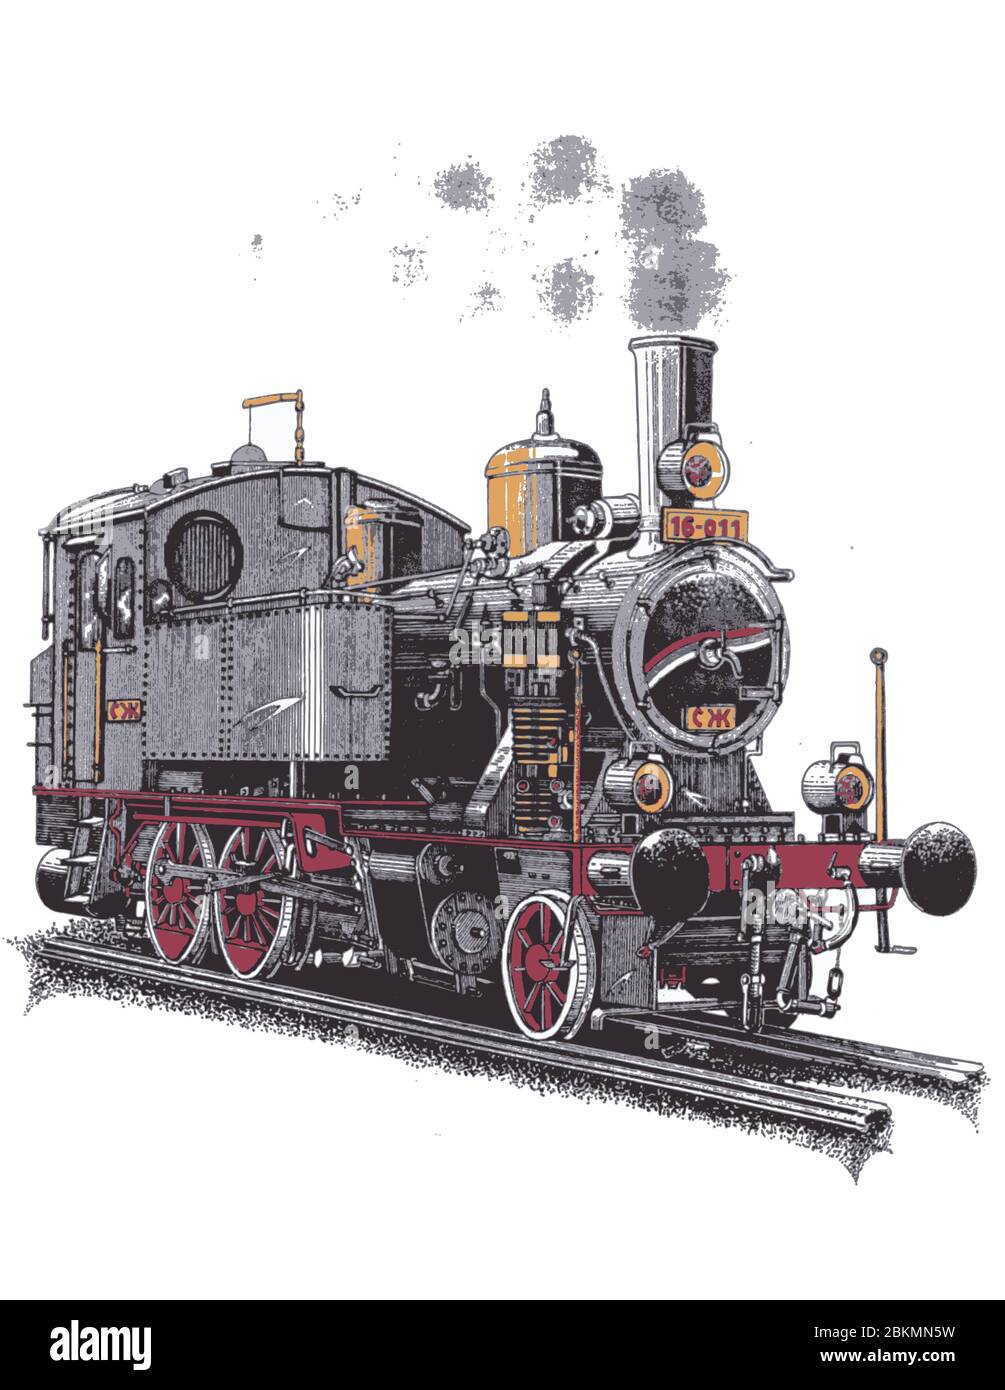 Ancienne locomotive à vapeur, sur rails ferroviaires, dessinée en trois couleurs noir, rouge et ocre Illustration de Vecteur